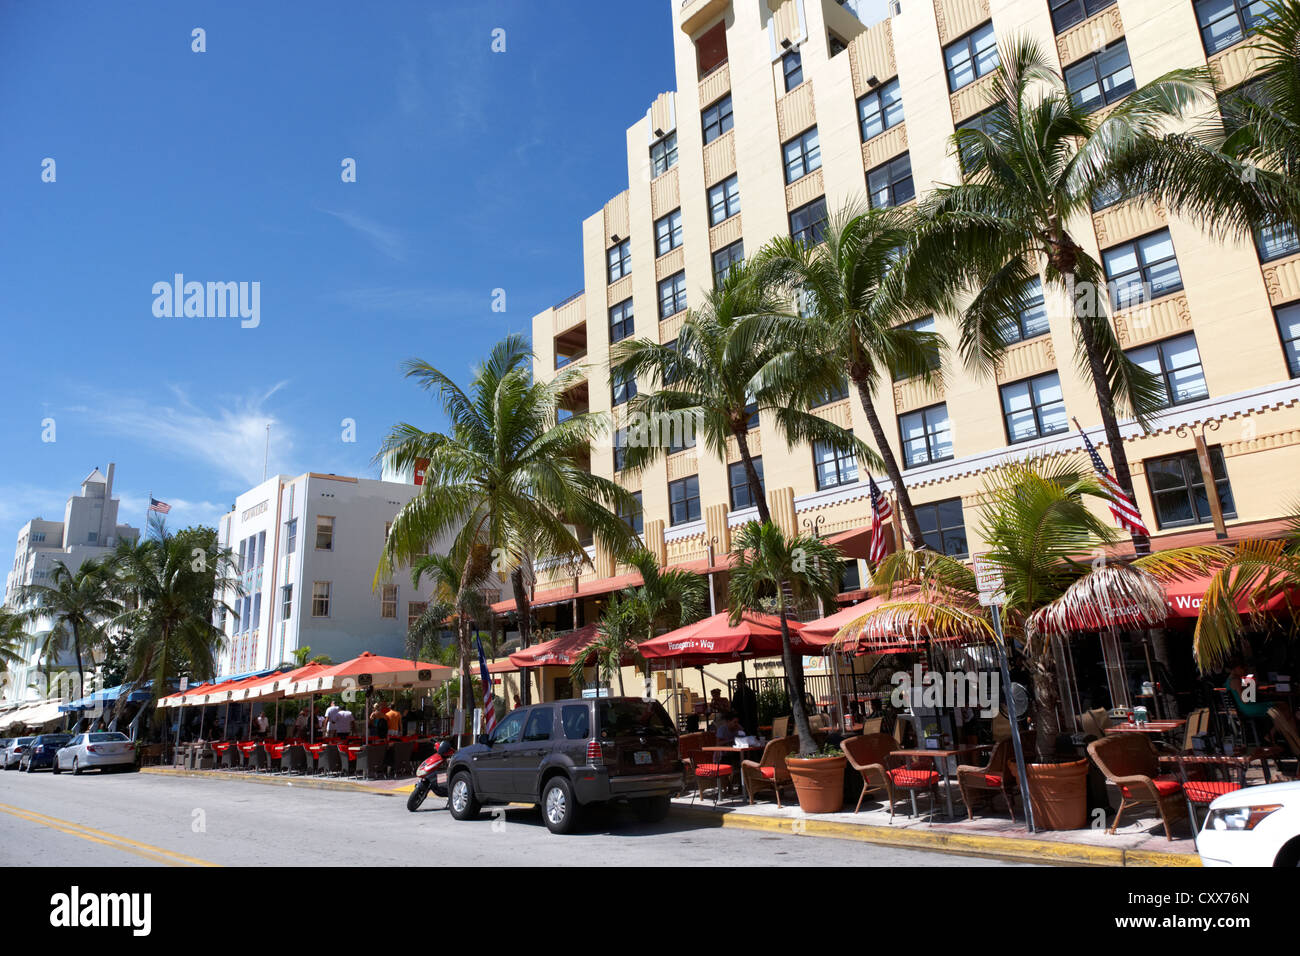 Hôtels et bars dans le quartier art déco historique Ocean drive Miami South beach floride usa Banque D'Images